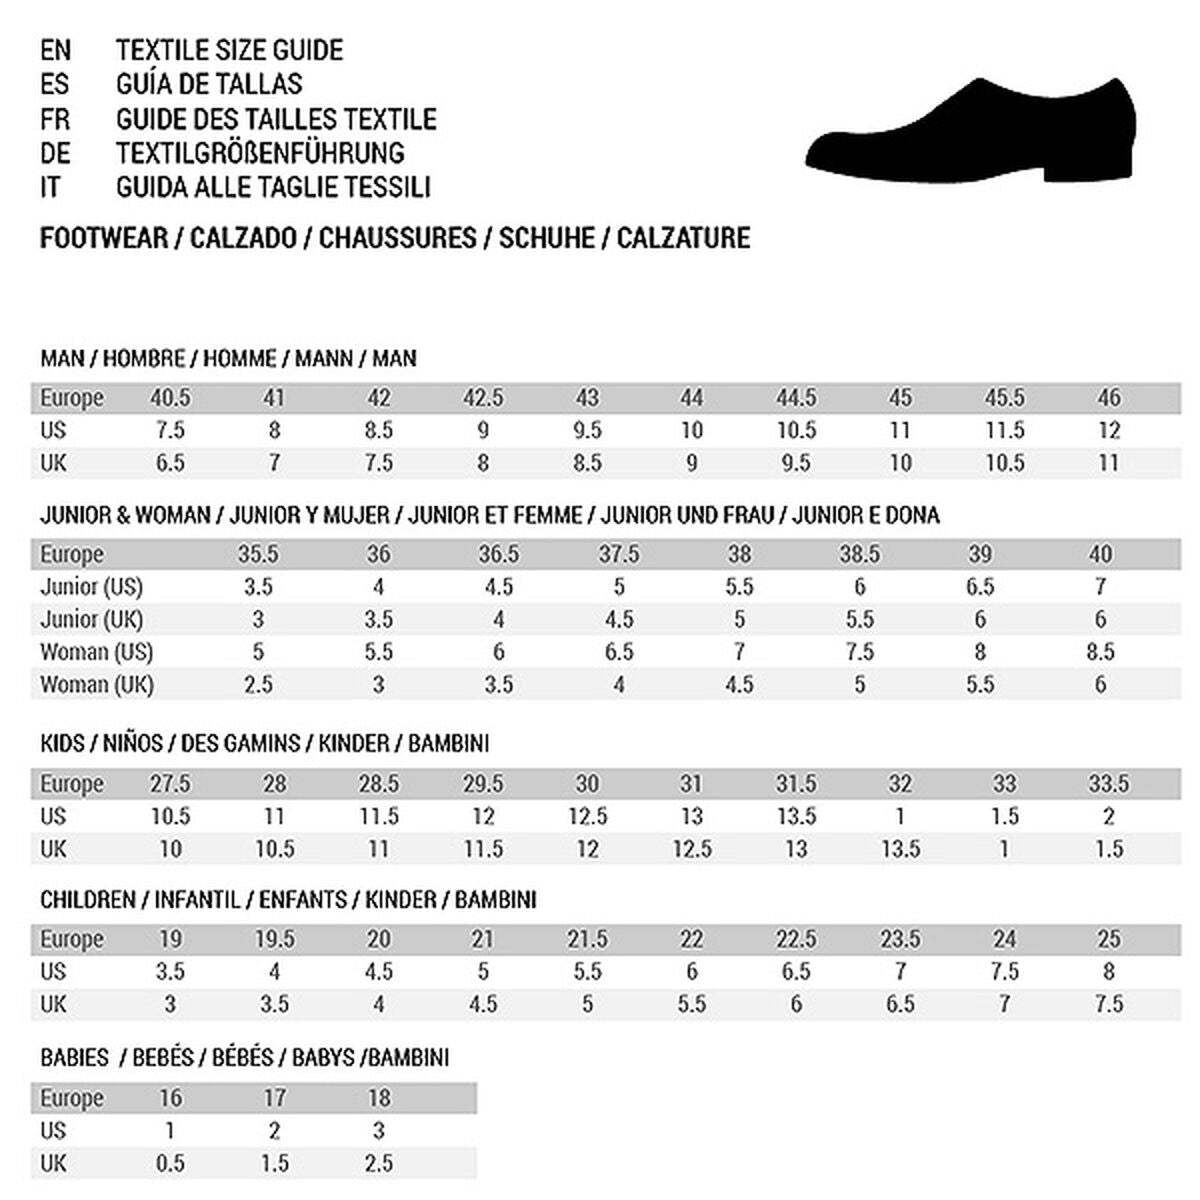 Chaussures de Running pour Adultes Asics Gel-Sonoma 7 Homme Noir